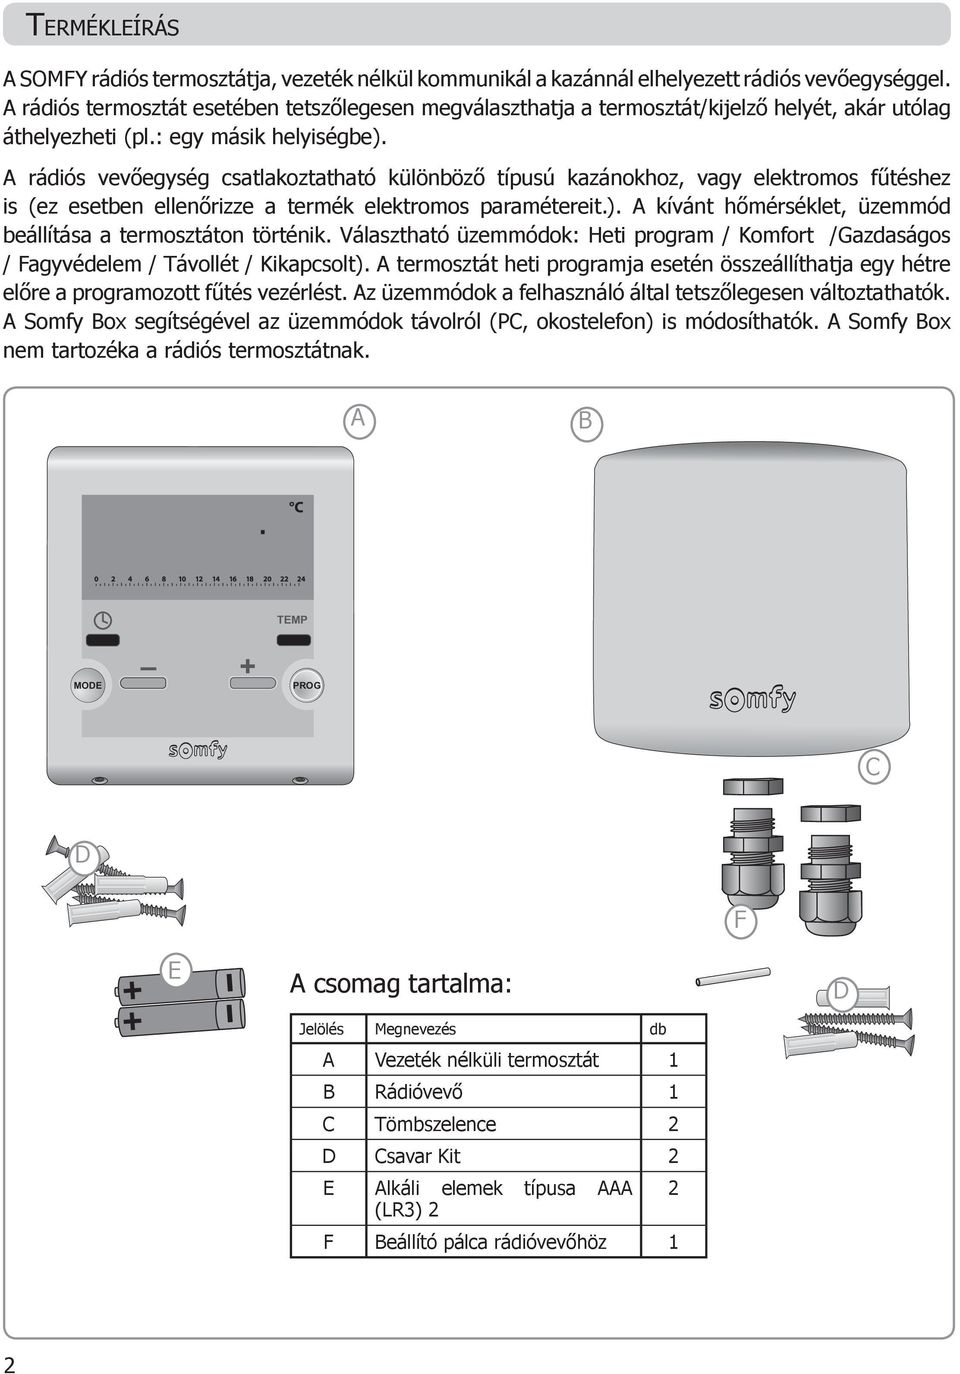 Vezeték nélküli termosztát. Beüzemelési és használati útmutató - PDF  Ingyenes letöltés